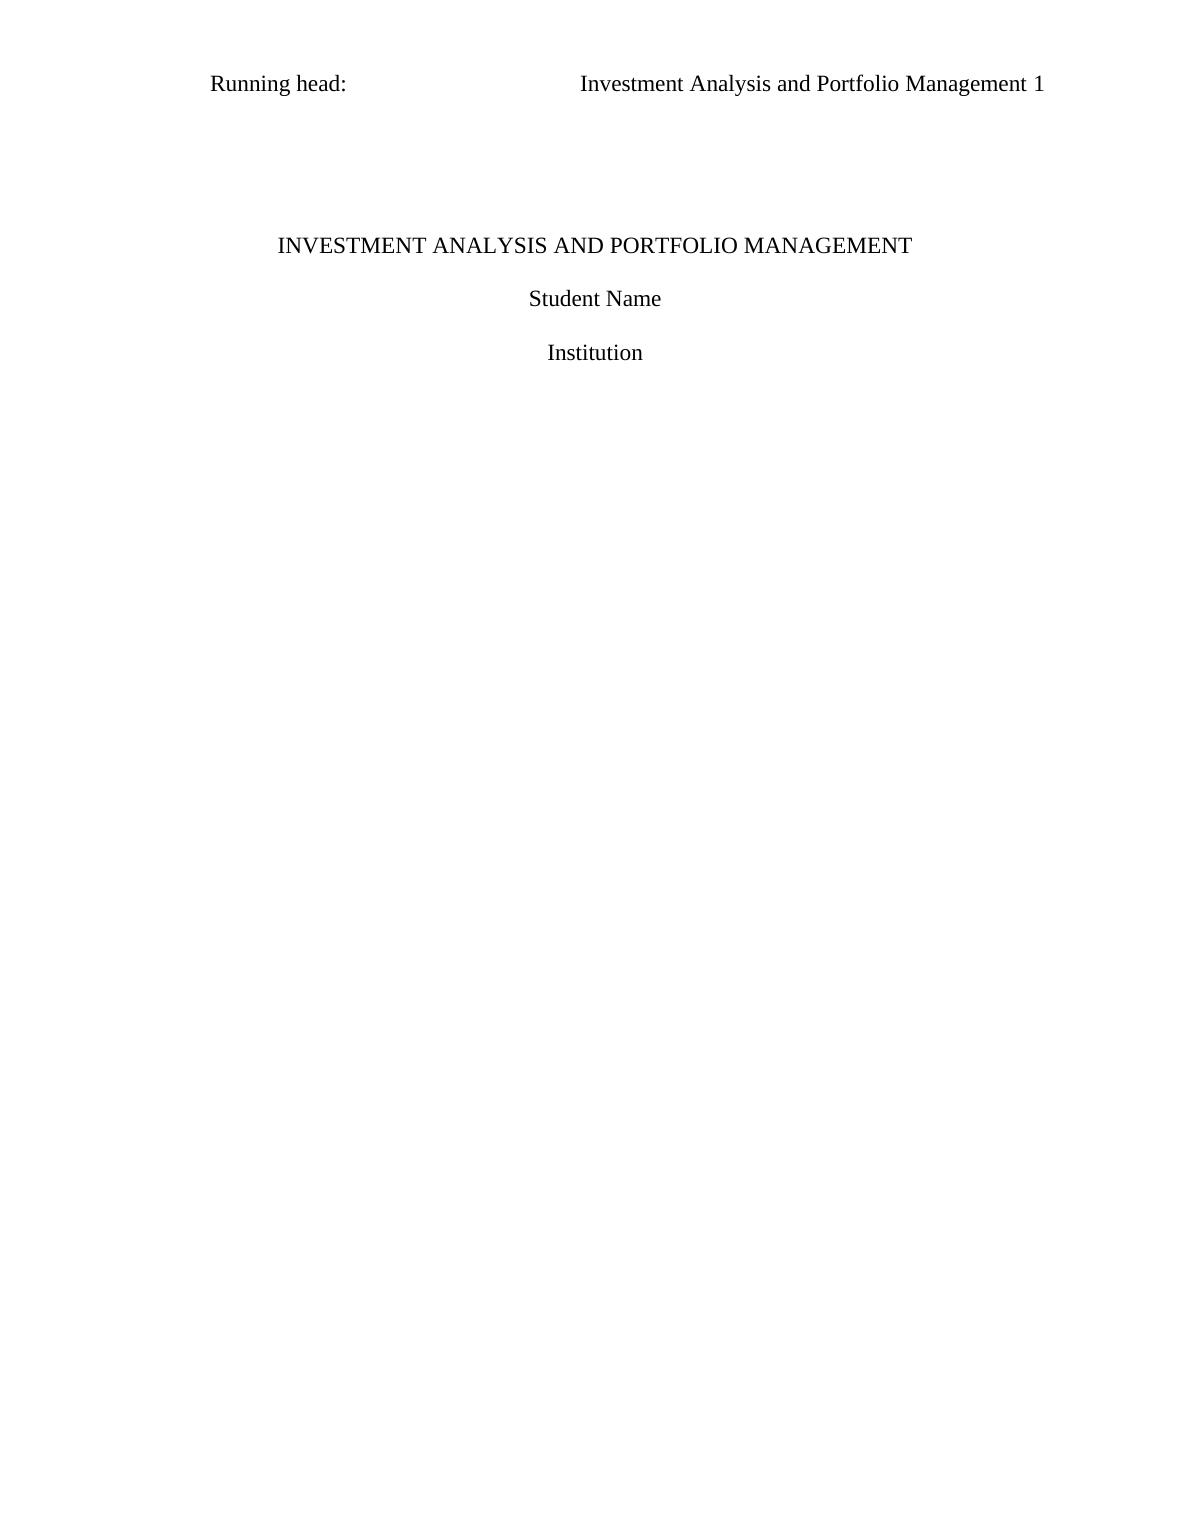 Investment Analysis and Portfolio Analysis of India & China_1